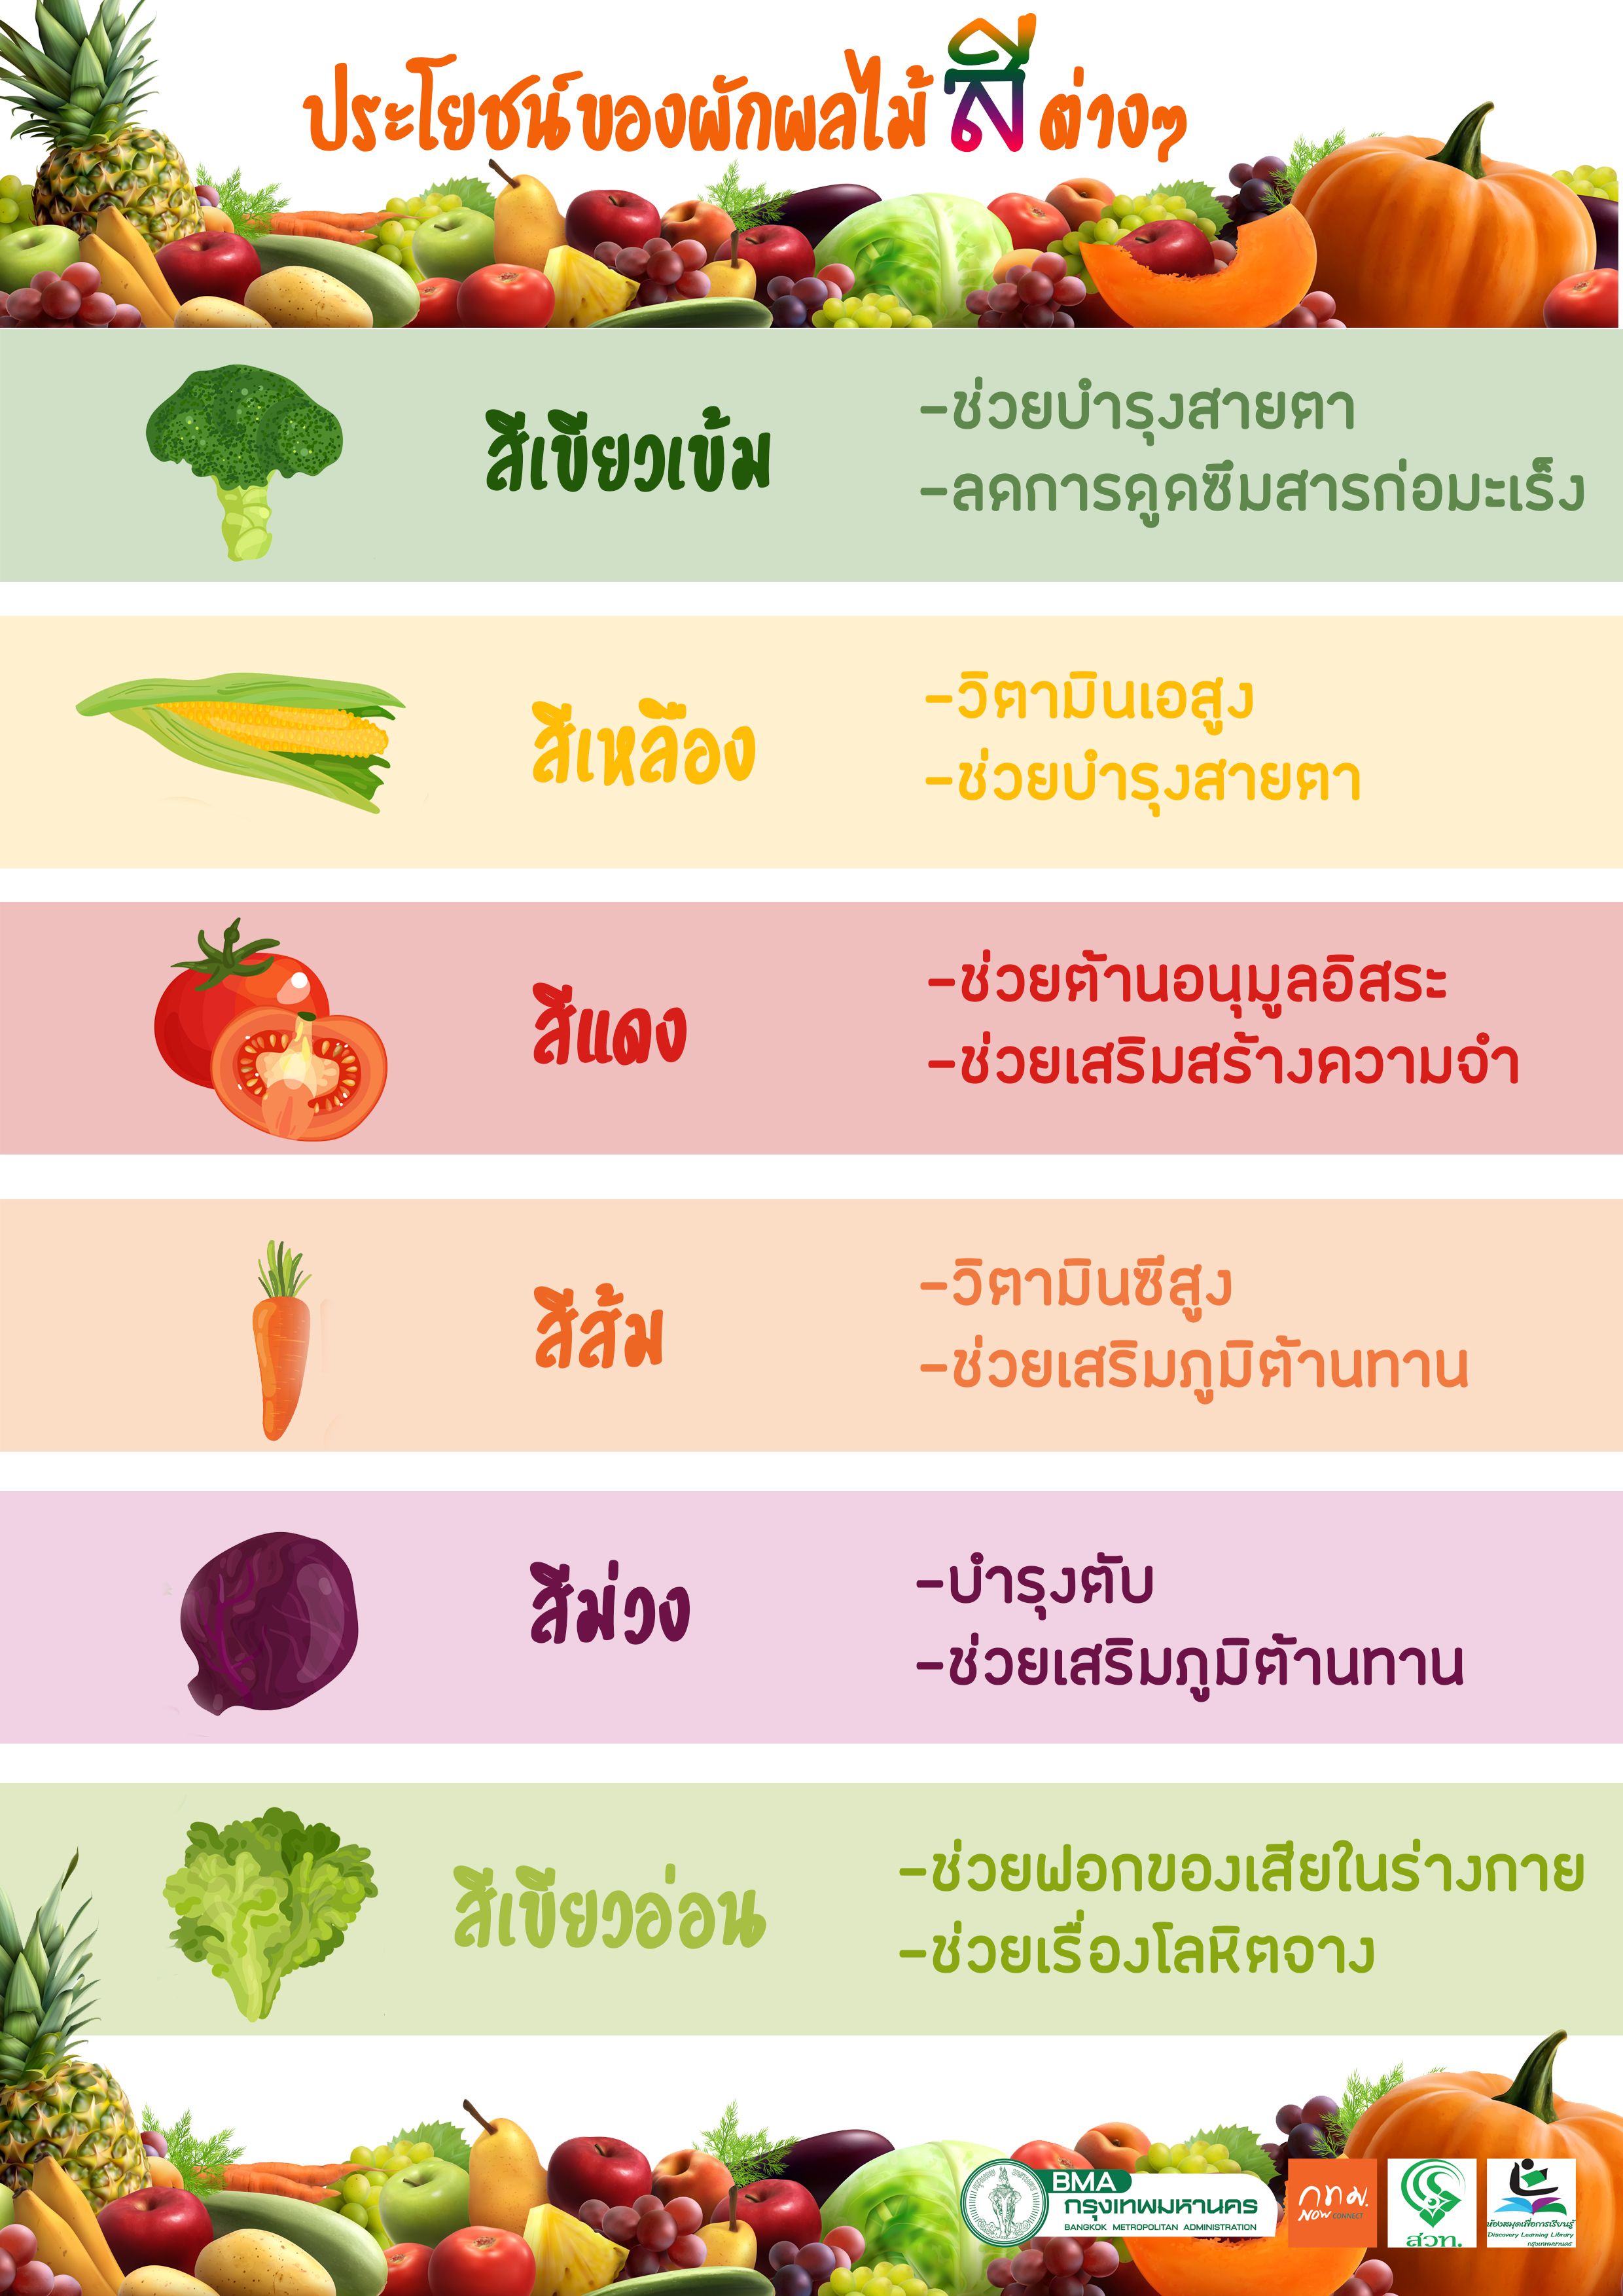 ประโยชน์ของผักผลไม้สีต่างๆ